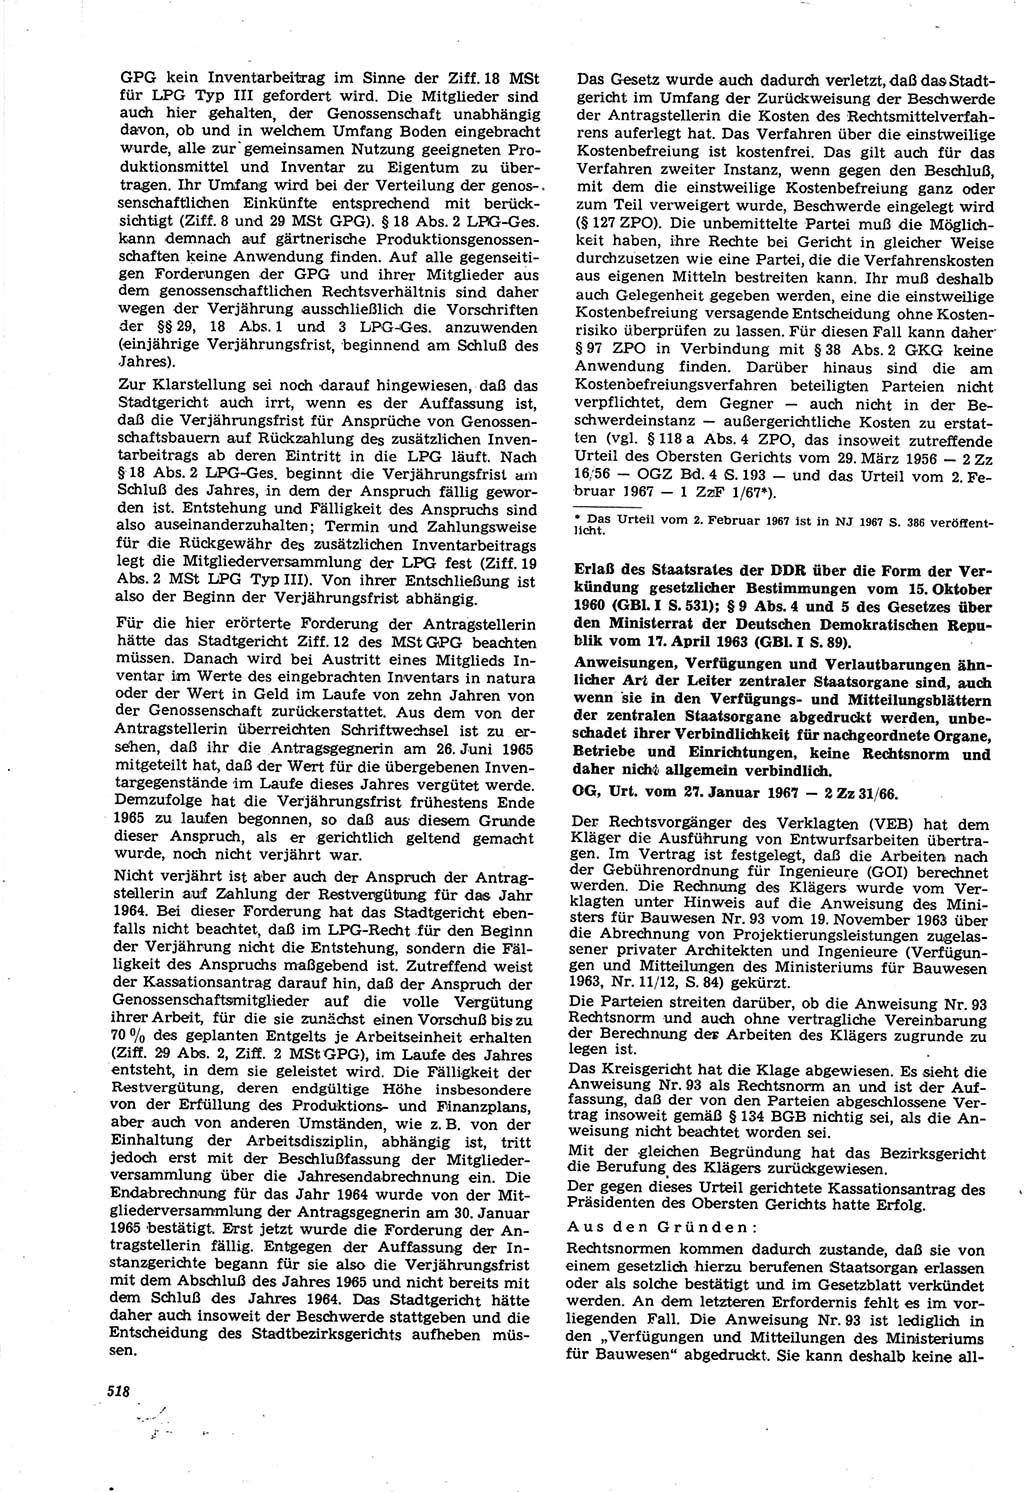 Neue Justiz (NJ), Zeitschrift für Recht und Rechtswissenschaft [Deutsche Demokratische Republik (DDR)], 21. Jahrgang 1967, Seite 518 (NJ DDR 1967, S. 518)